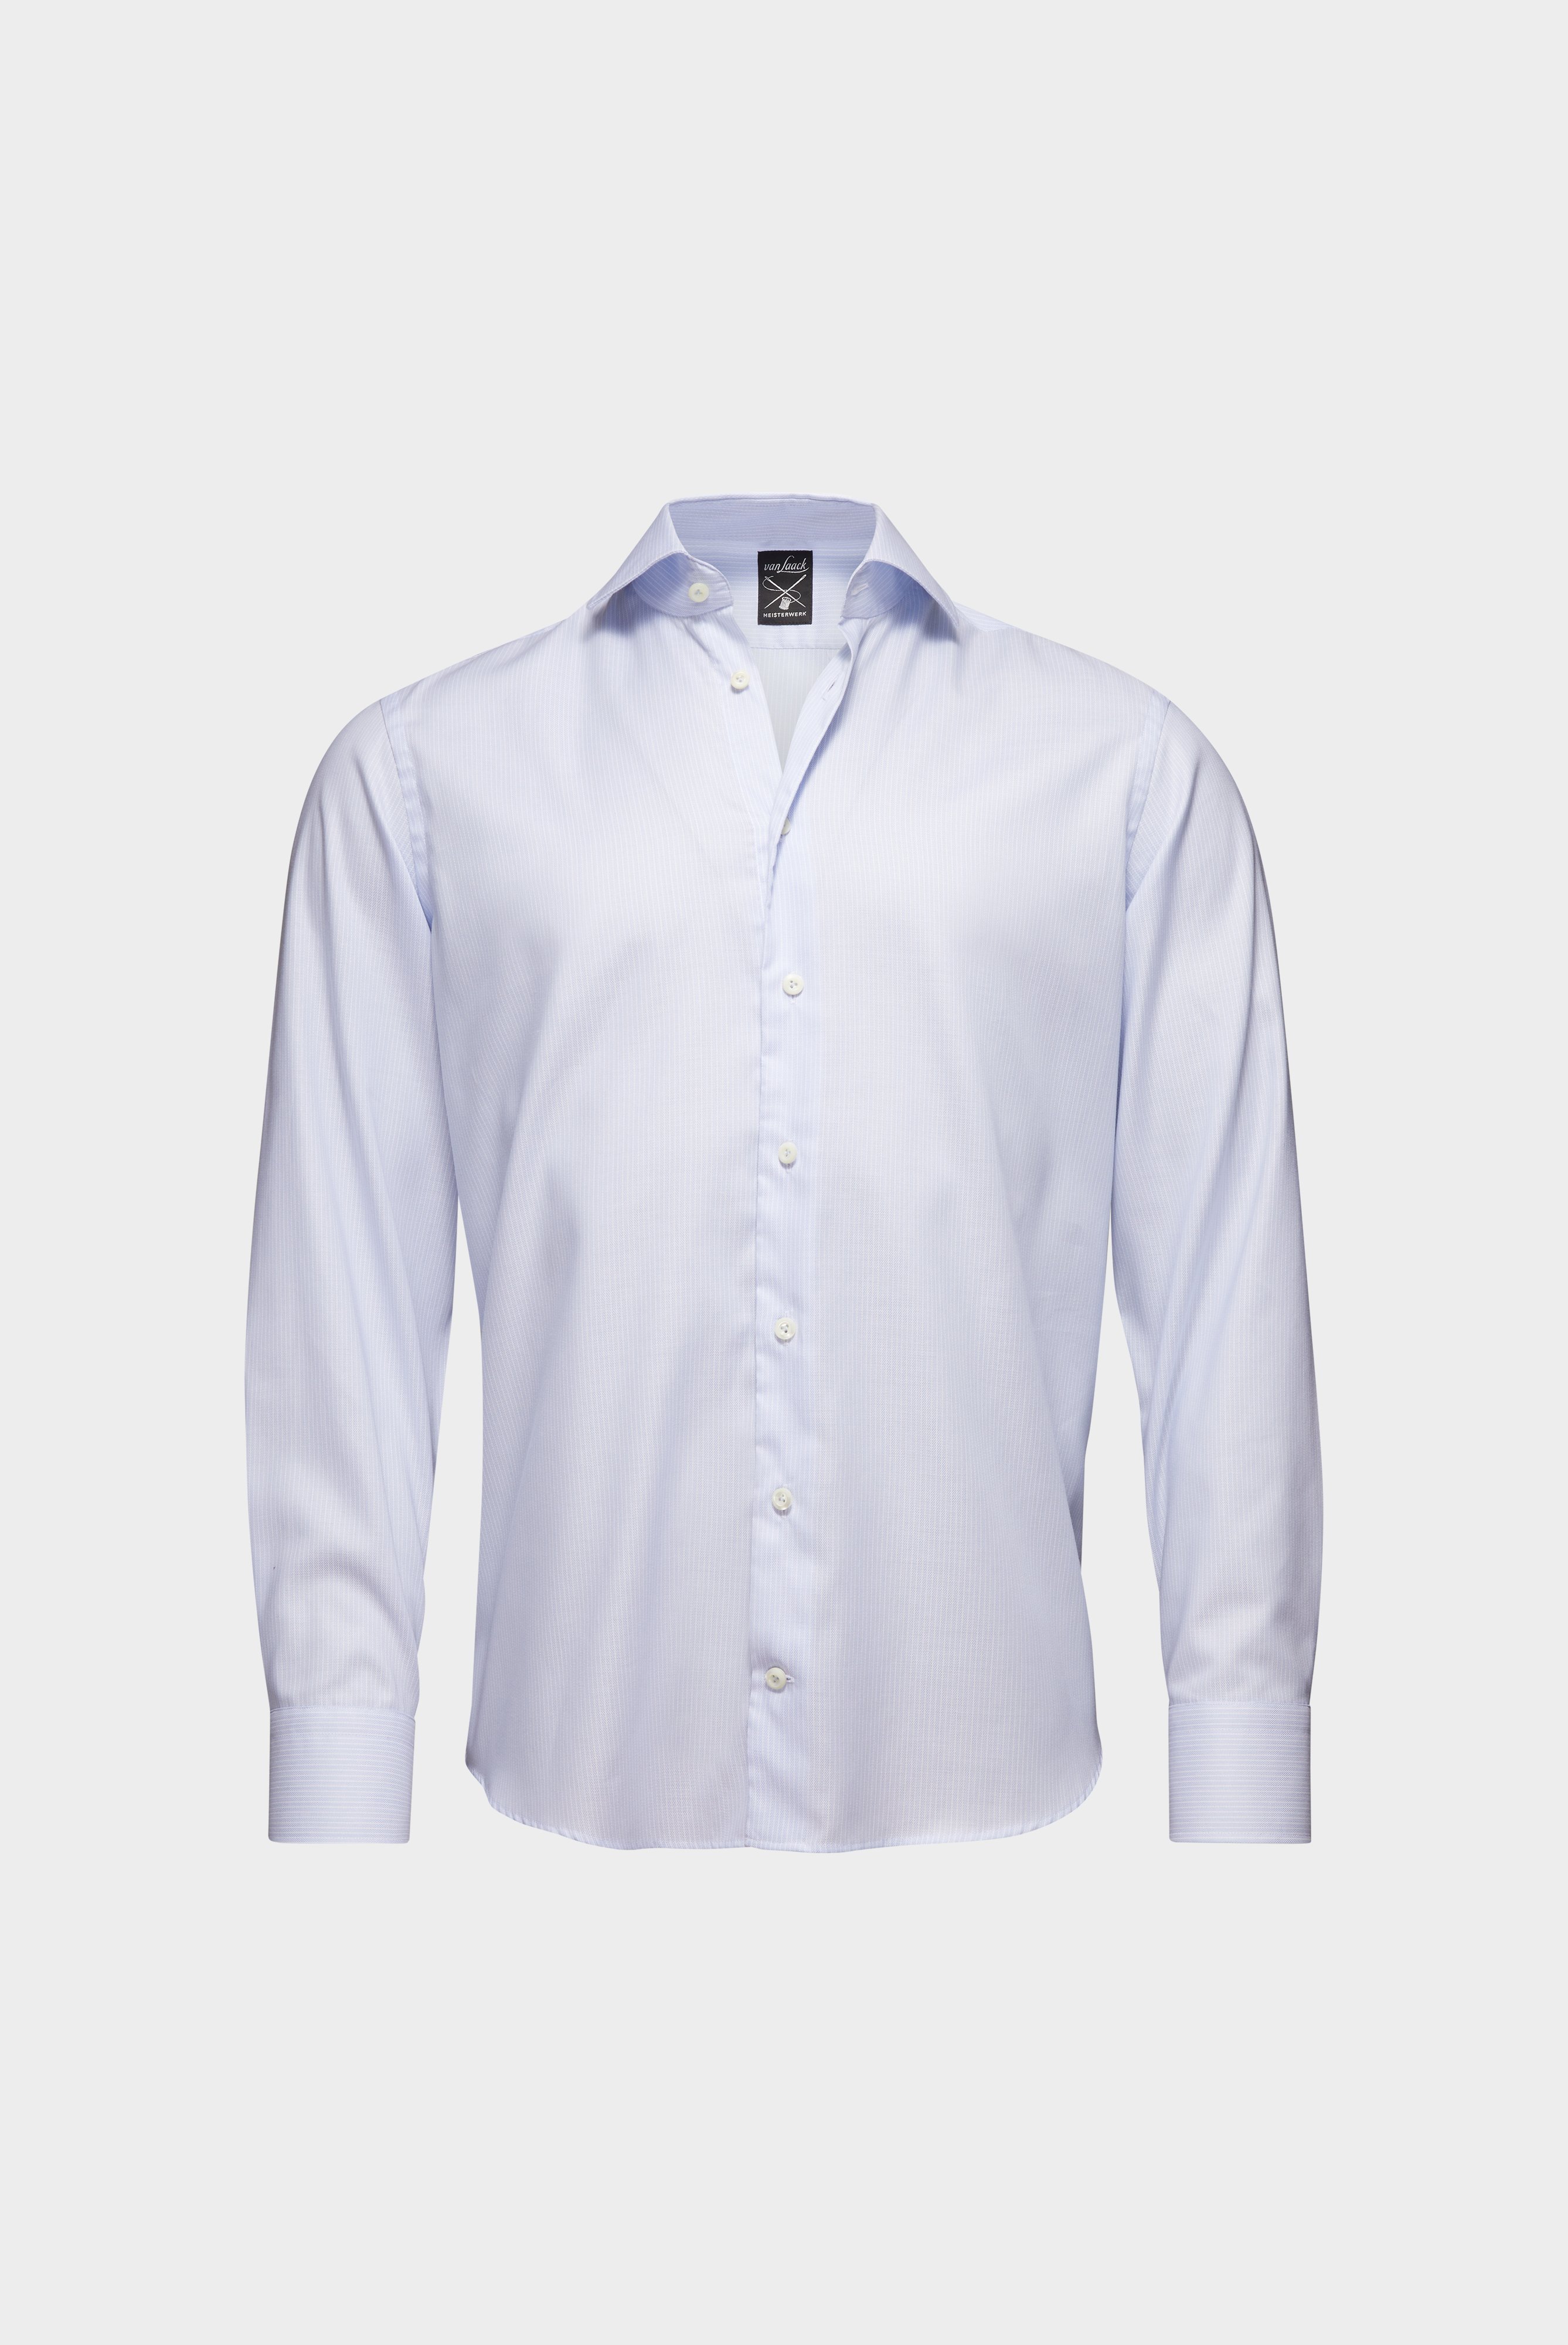 Bügelleichte Hemden+Bügelfreies Hemd mit Streifen Tailor Fit+20.2020.BQ.161109.710.41